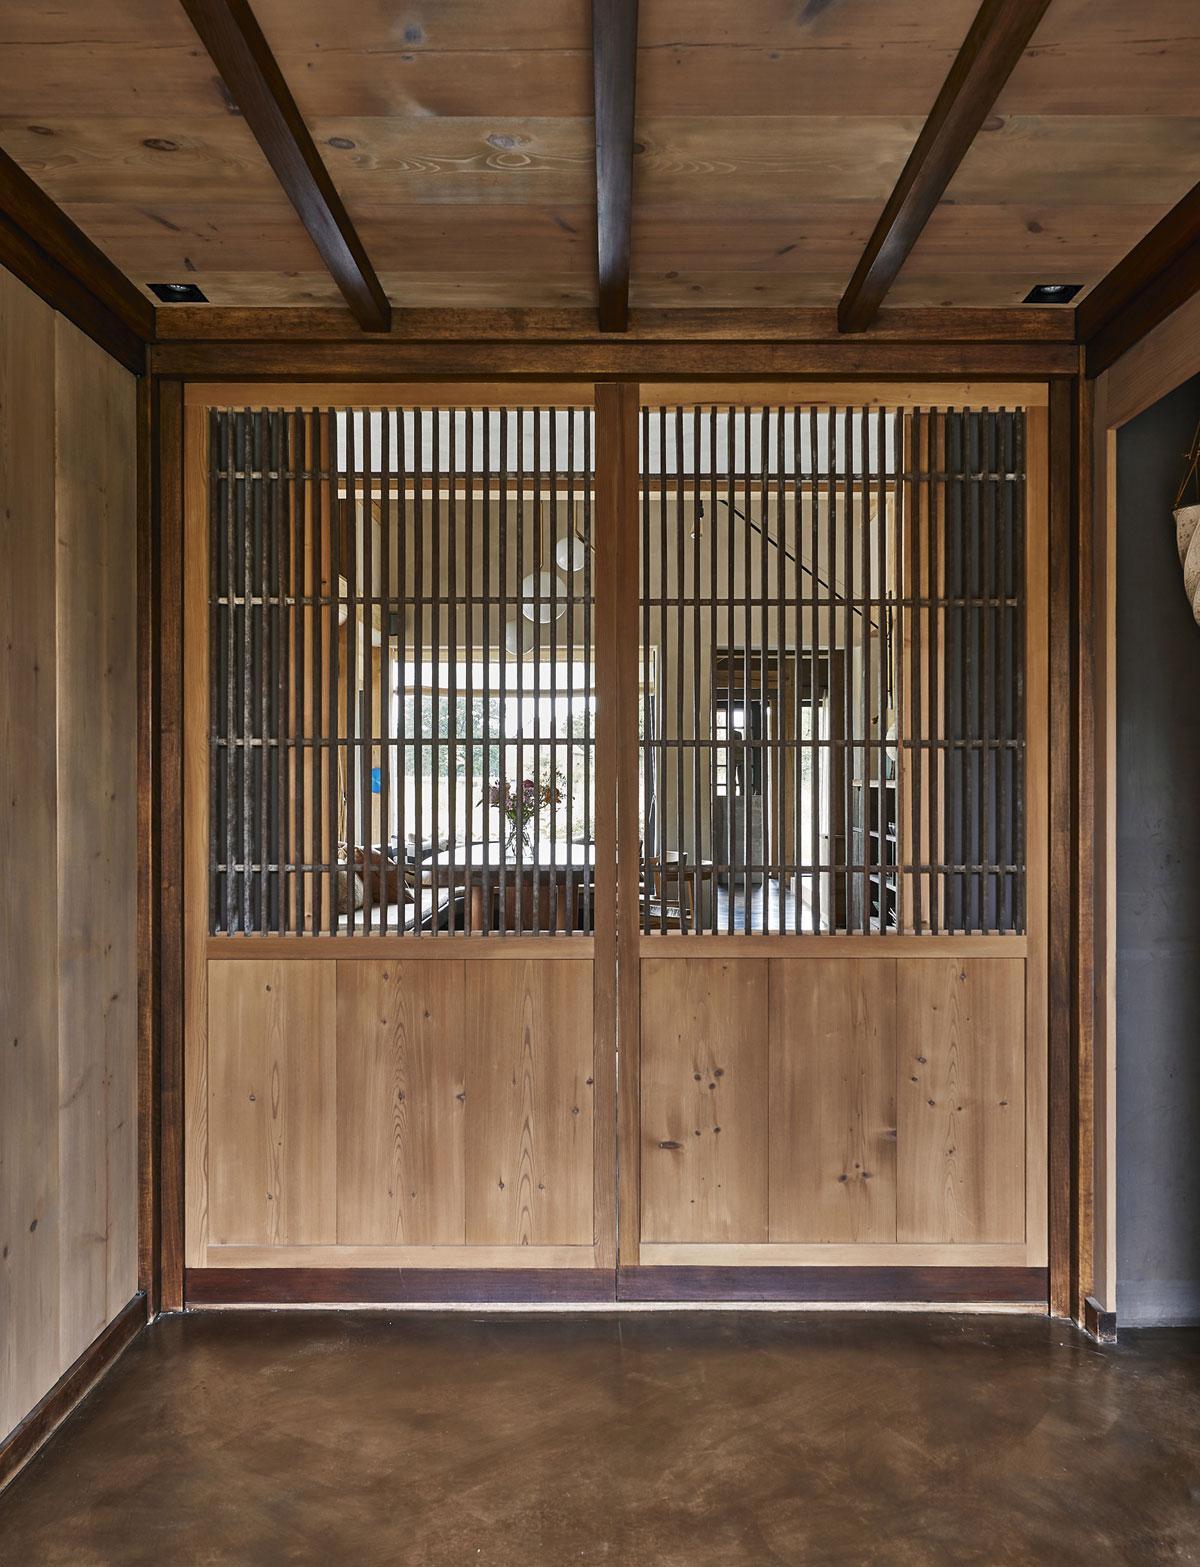 Les doubles portes japonaises constituent un rite de passage entre l’extérieur et l’intérieur.